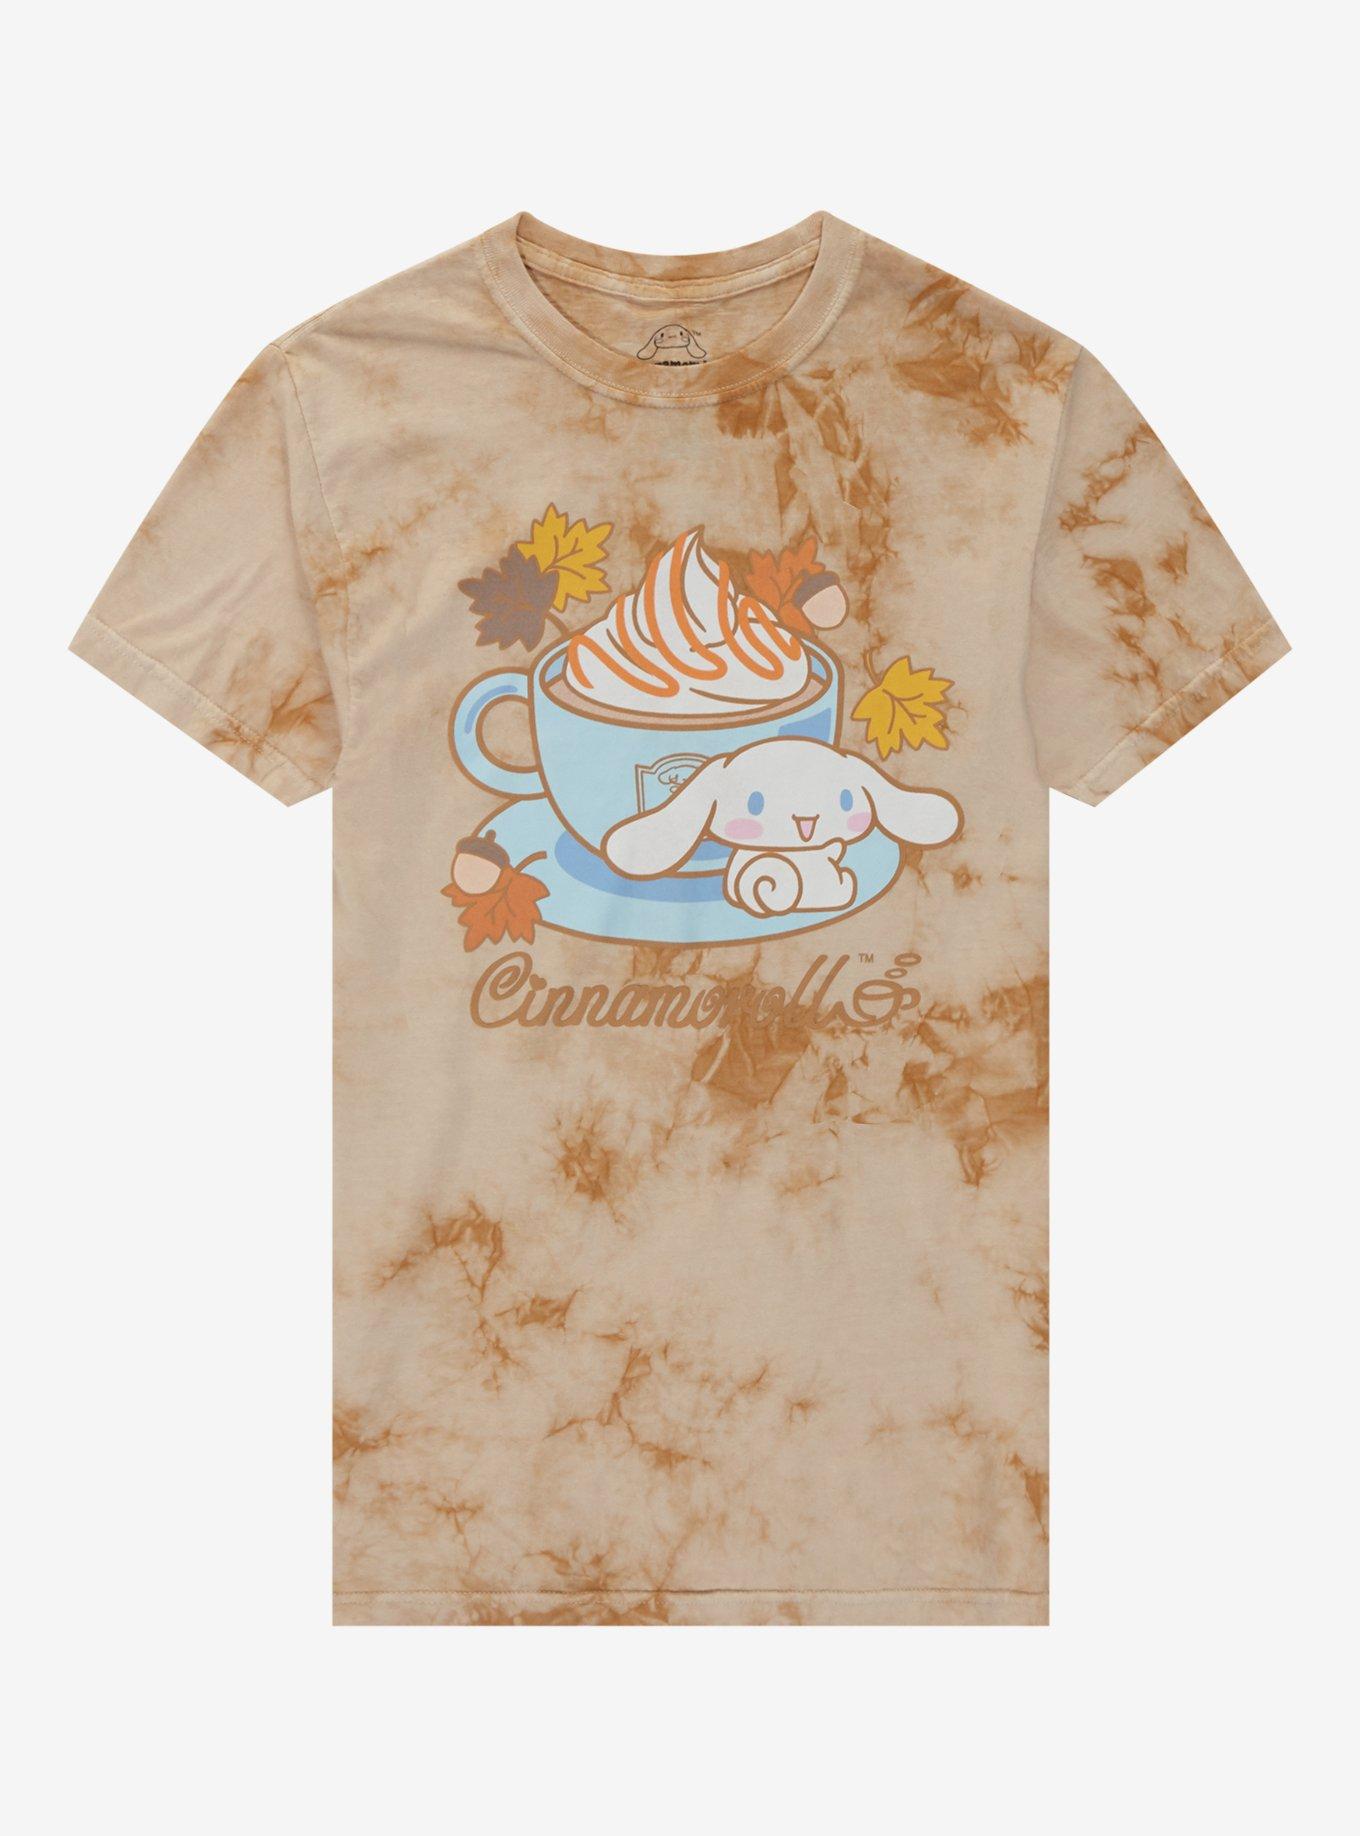 Cinnamoroll Fall Latte Tie-Dye Boyfriend Fit Girls T-Shirt